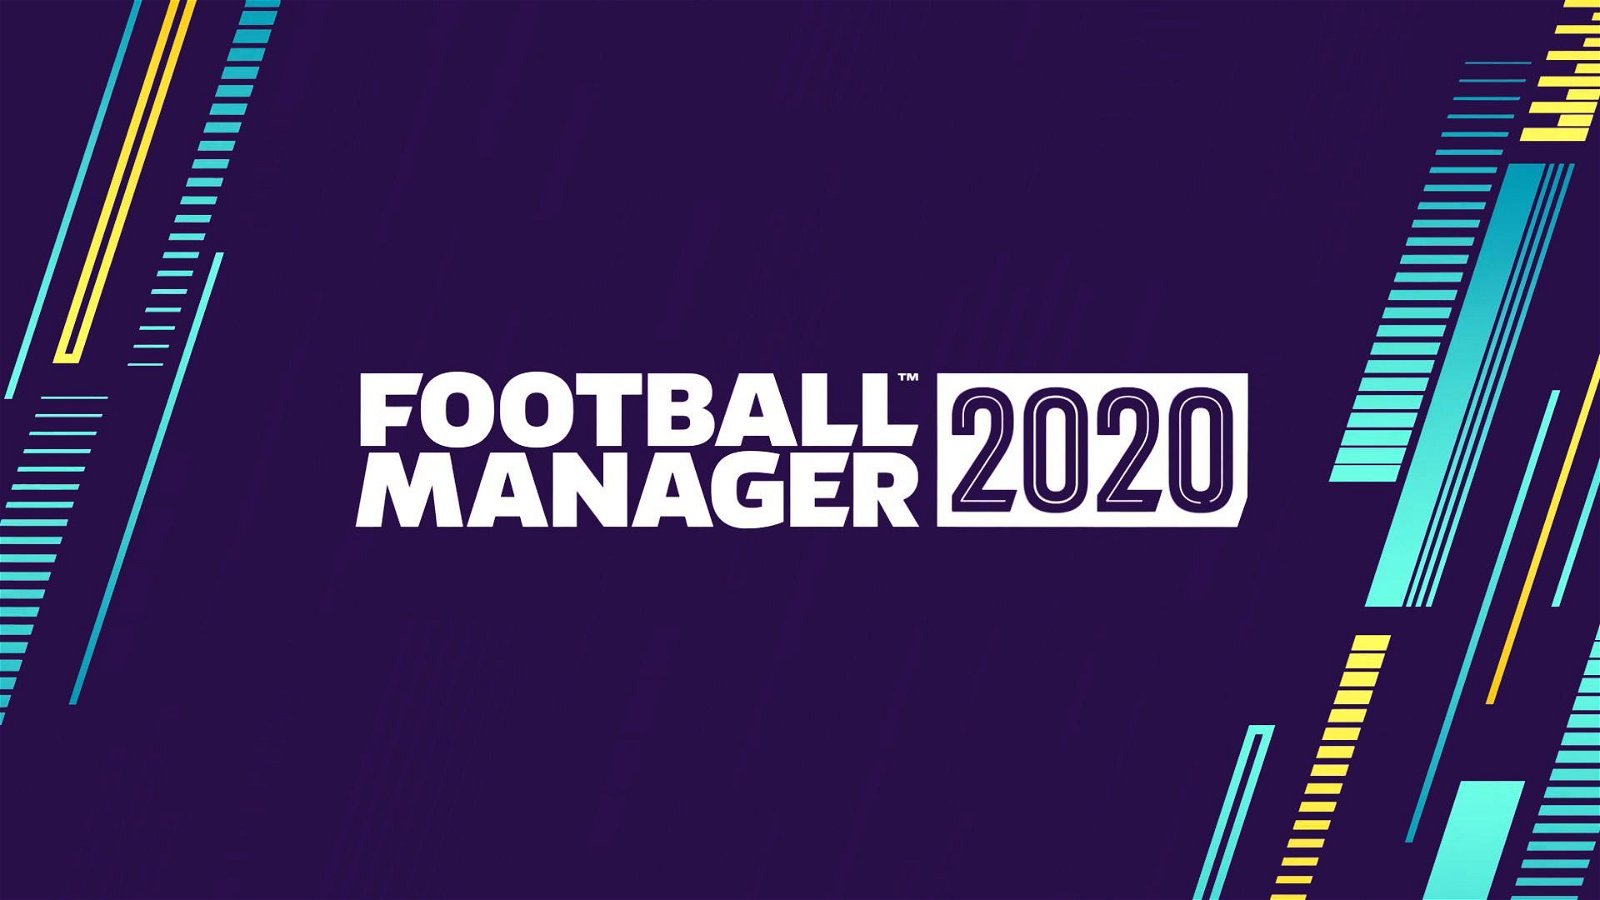 Football Manager 2020 è il più venduto nei territori EMEAA